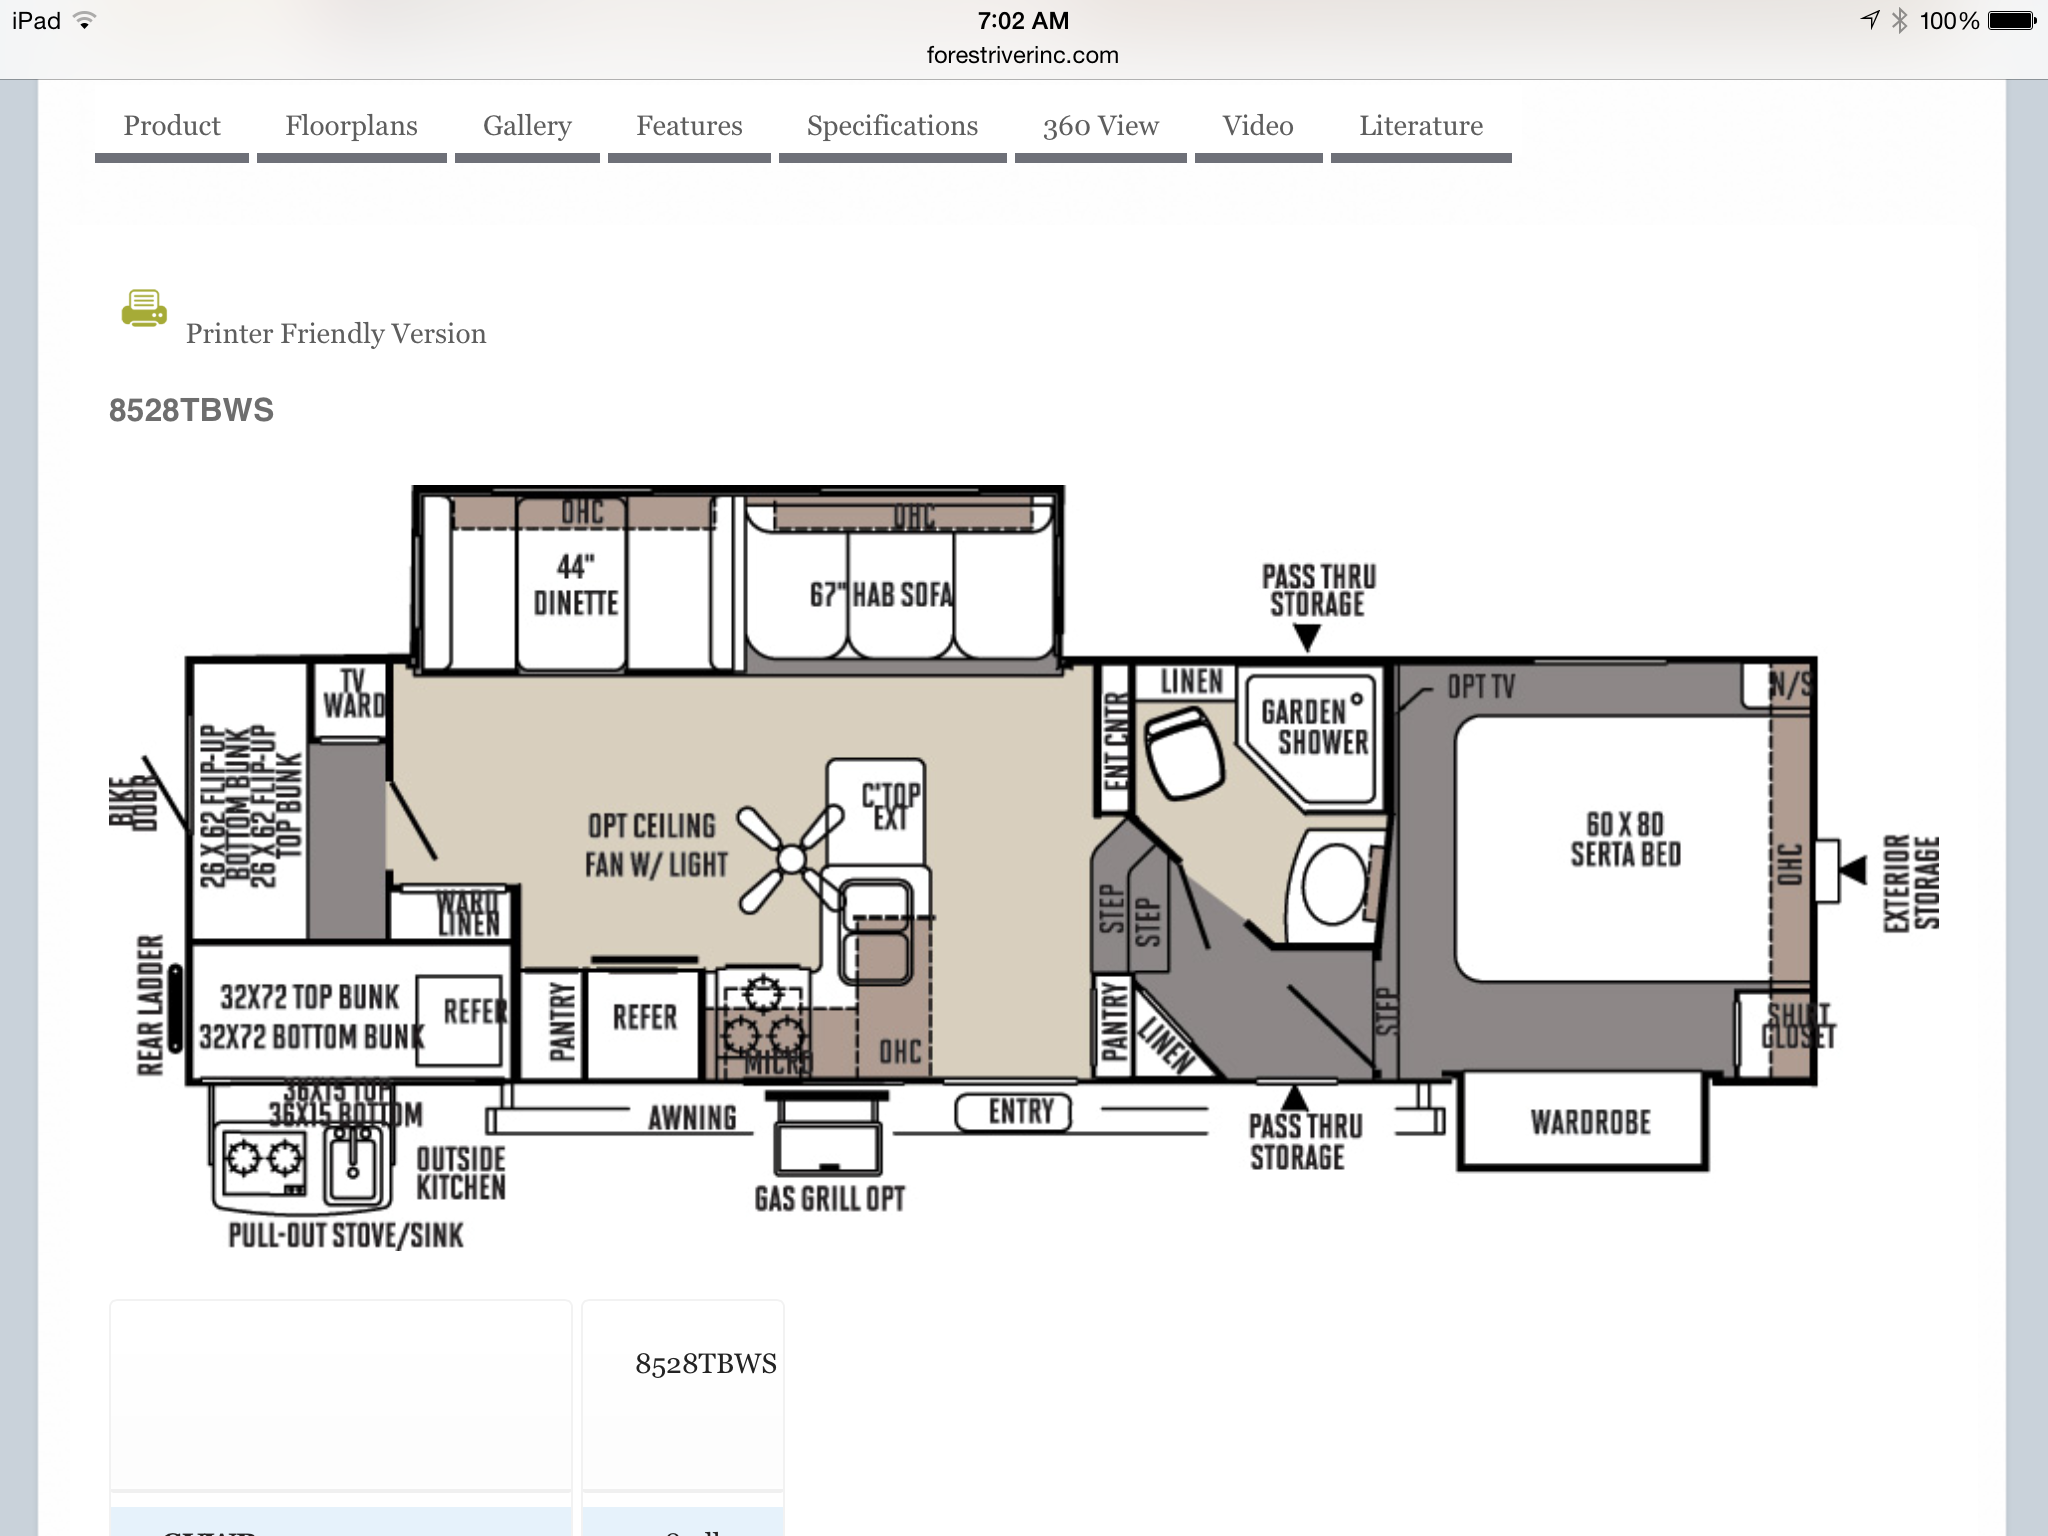 Flagstaff 5th wheel floorplan Floor plans, Garden shower